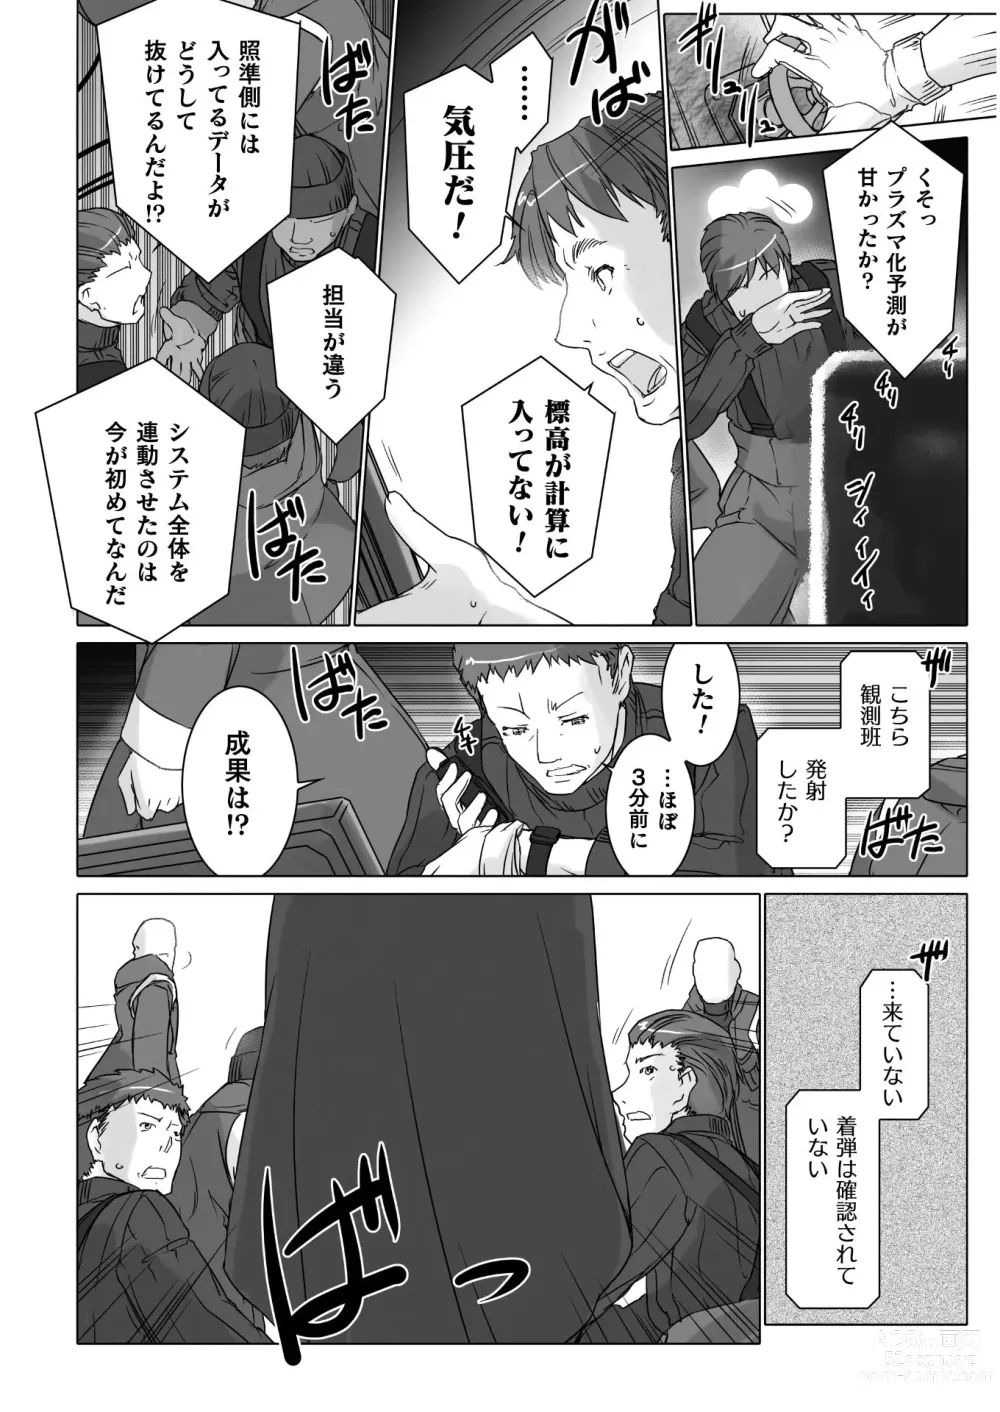 Page 2 of manga Ziggurat Ch. 63 - 73